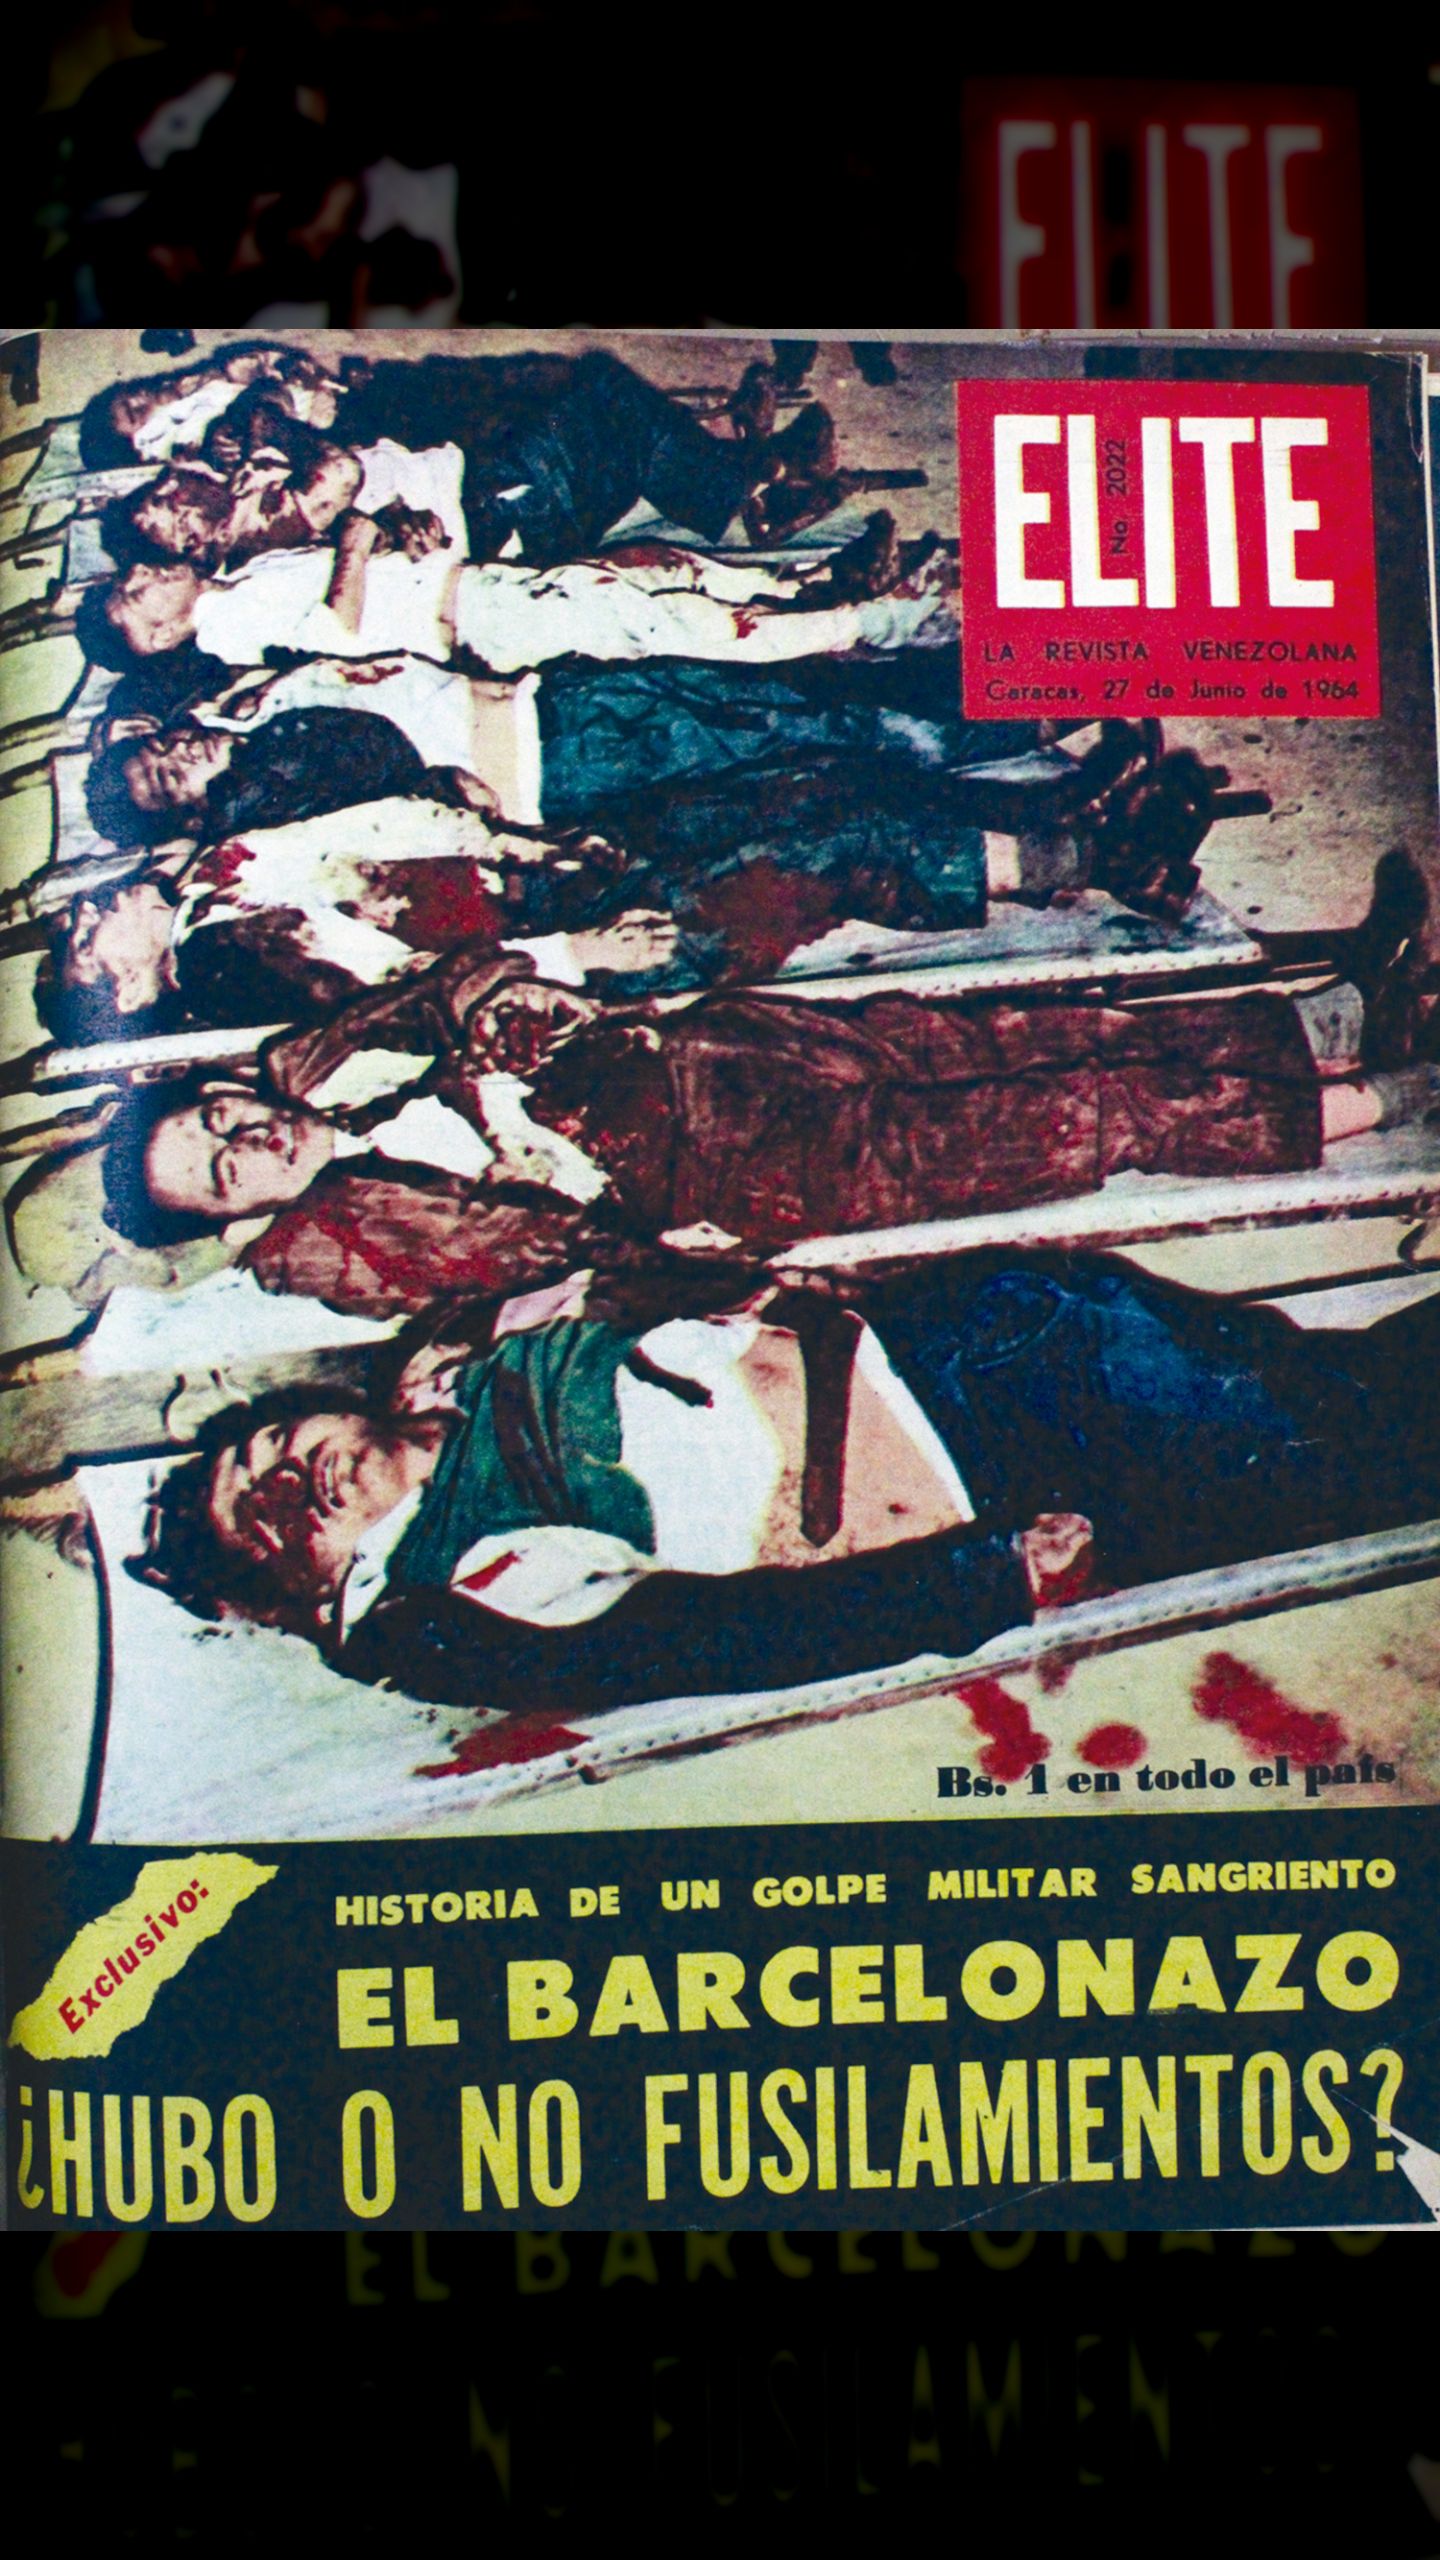 ¿Hubo fusilamientos en el Barcelonazo? (Élite, 27 de junio 1964)